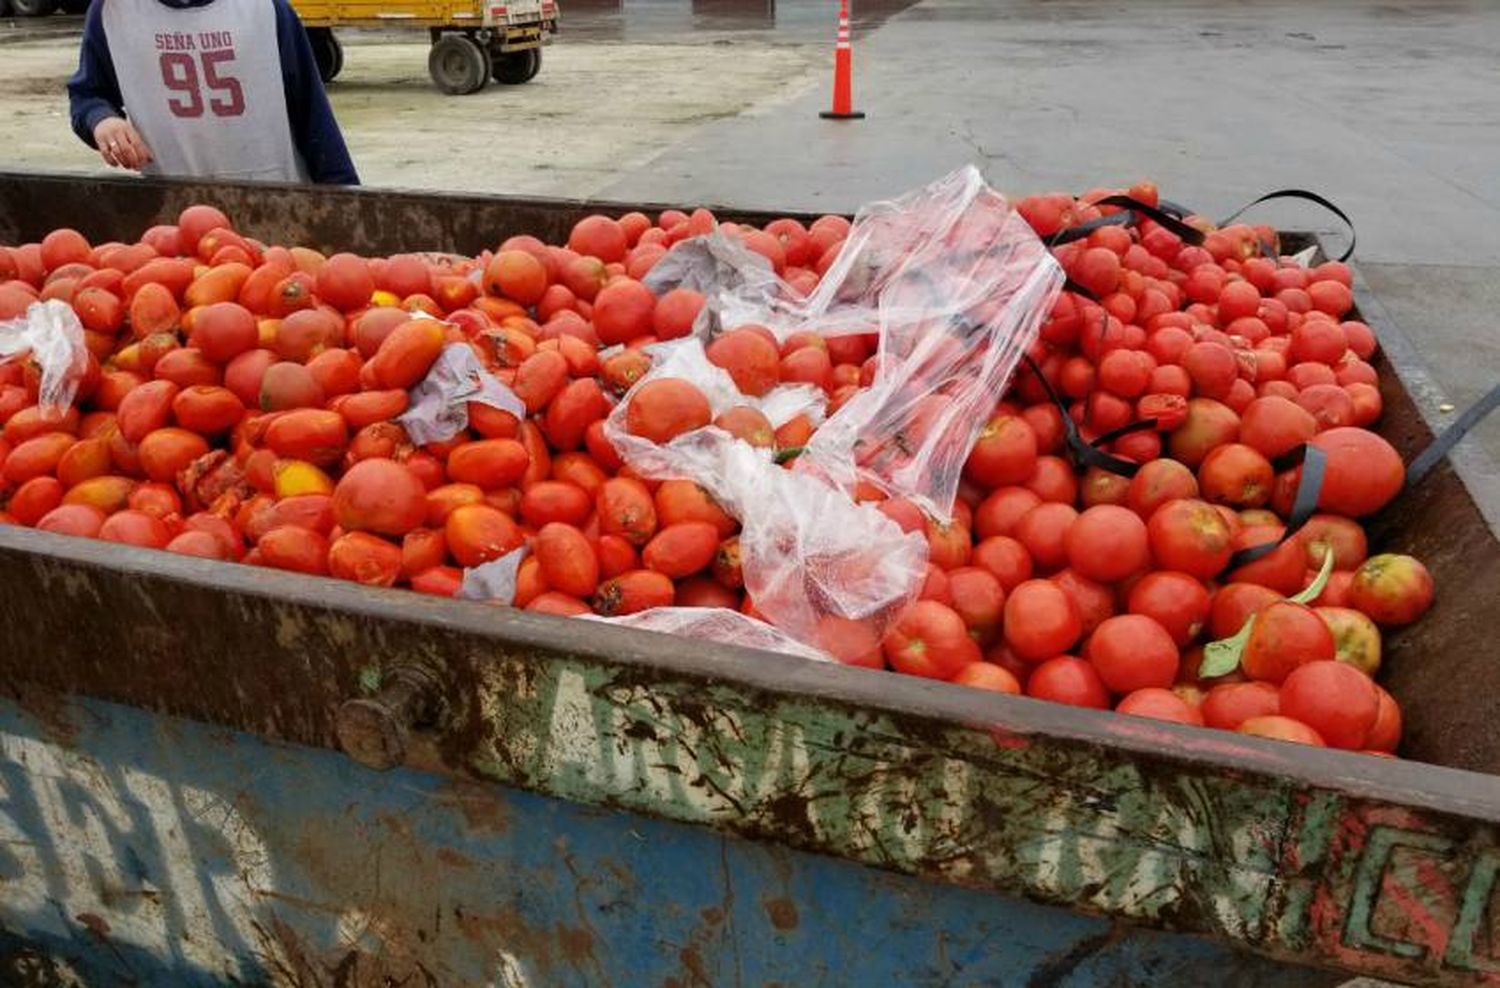 Virus rugoso del tomate: "No produce problemas a la salud pero sí pérdida de producción"